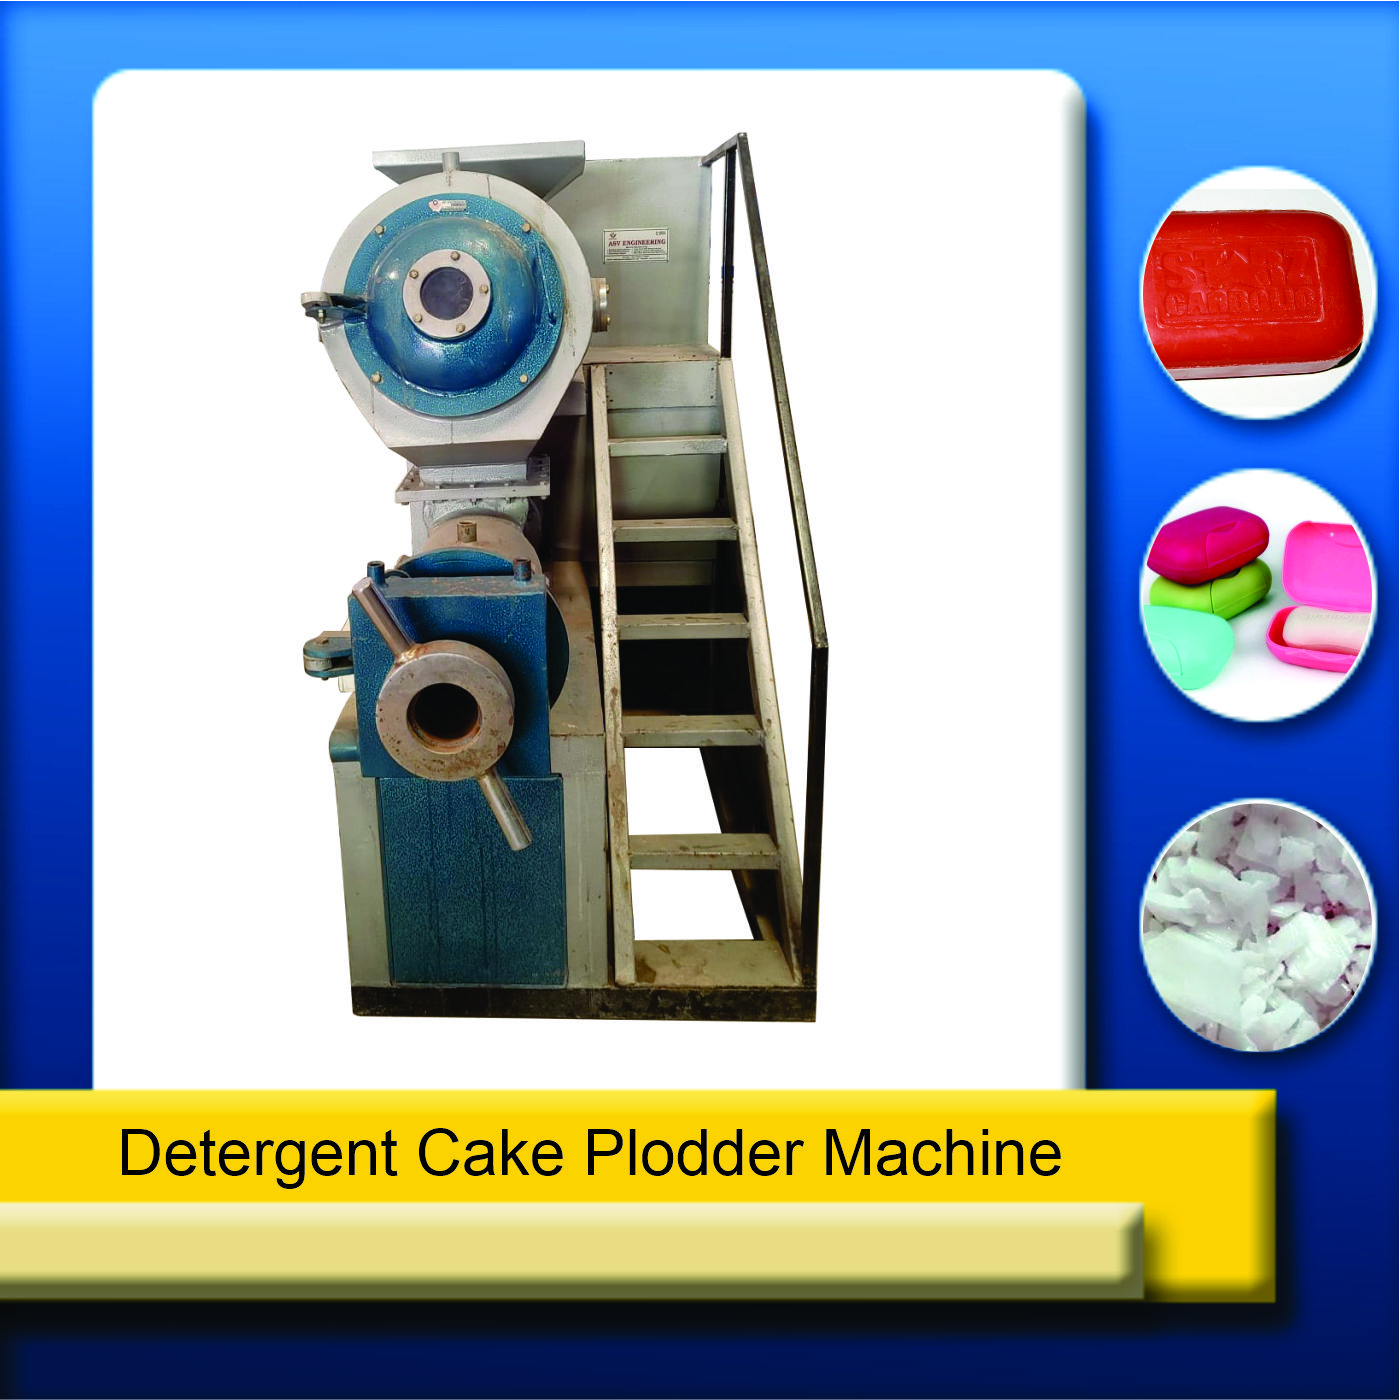  detergent cake plodder machine